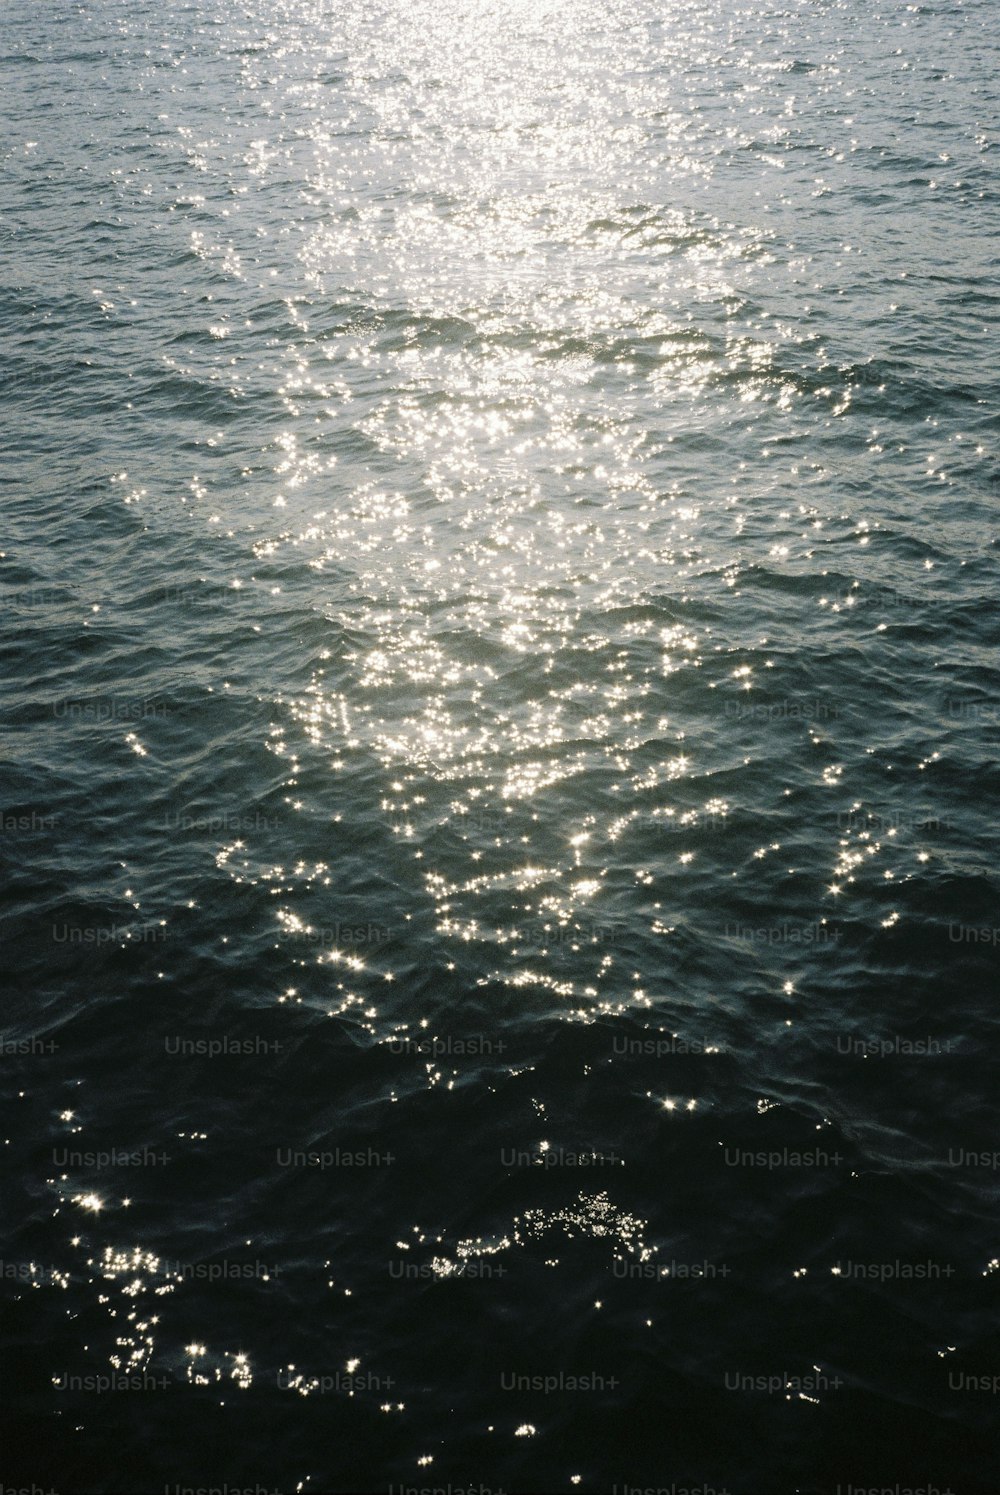 il sole splende luminoso sull'acqua